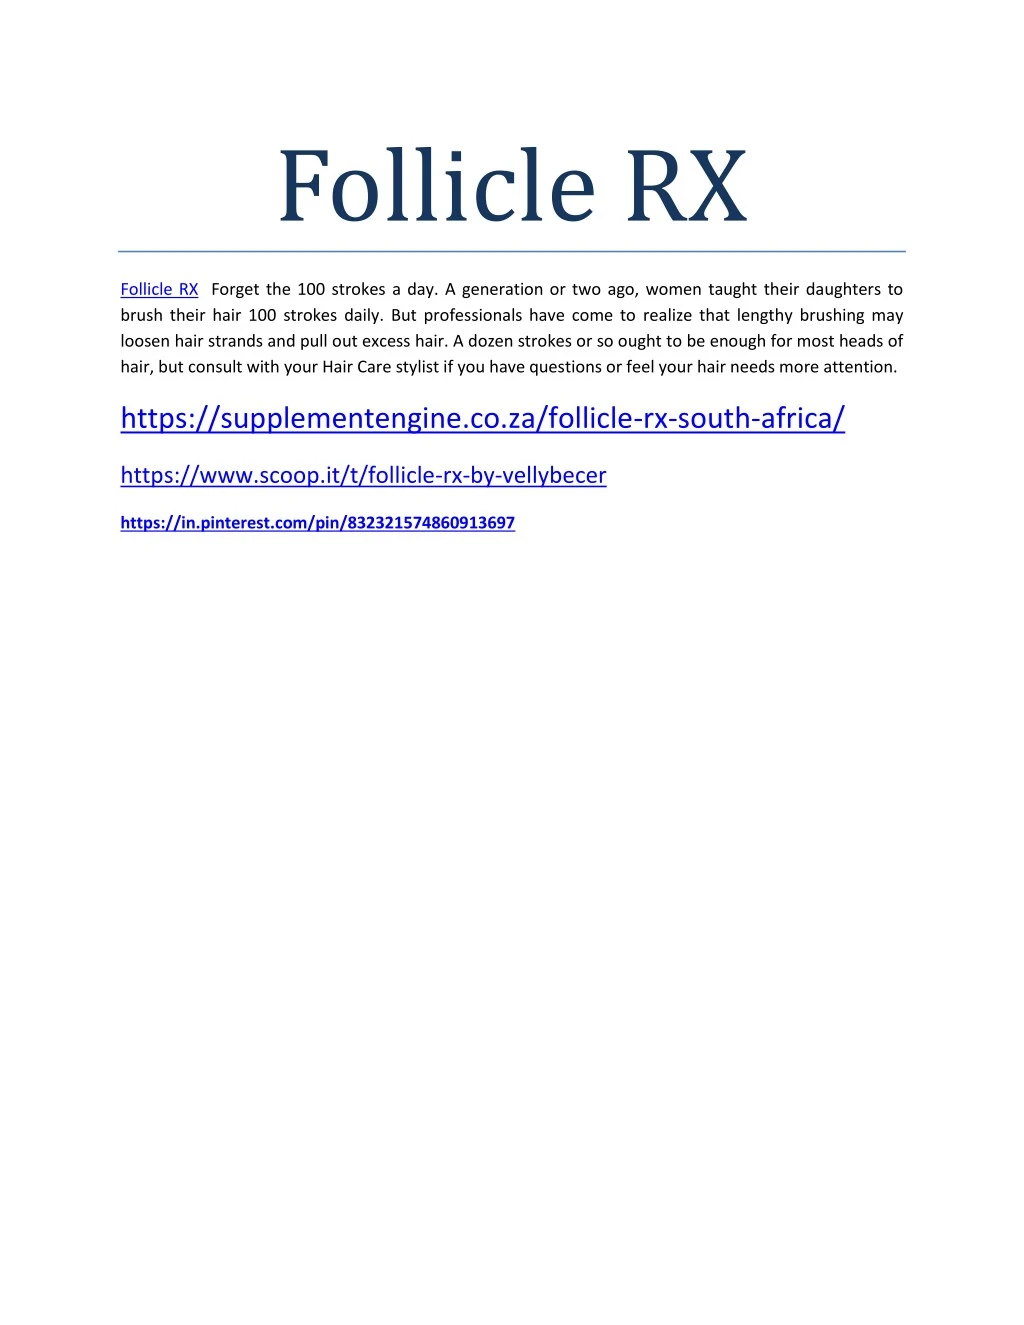 follicle rx